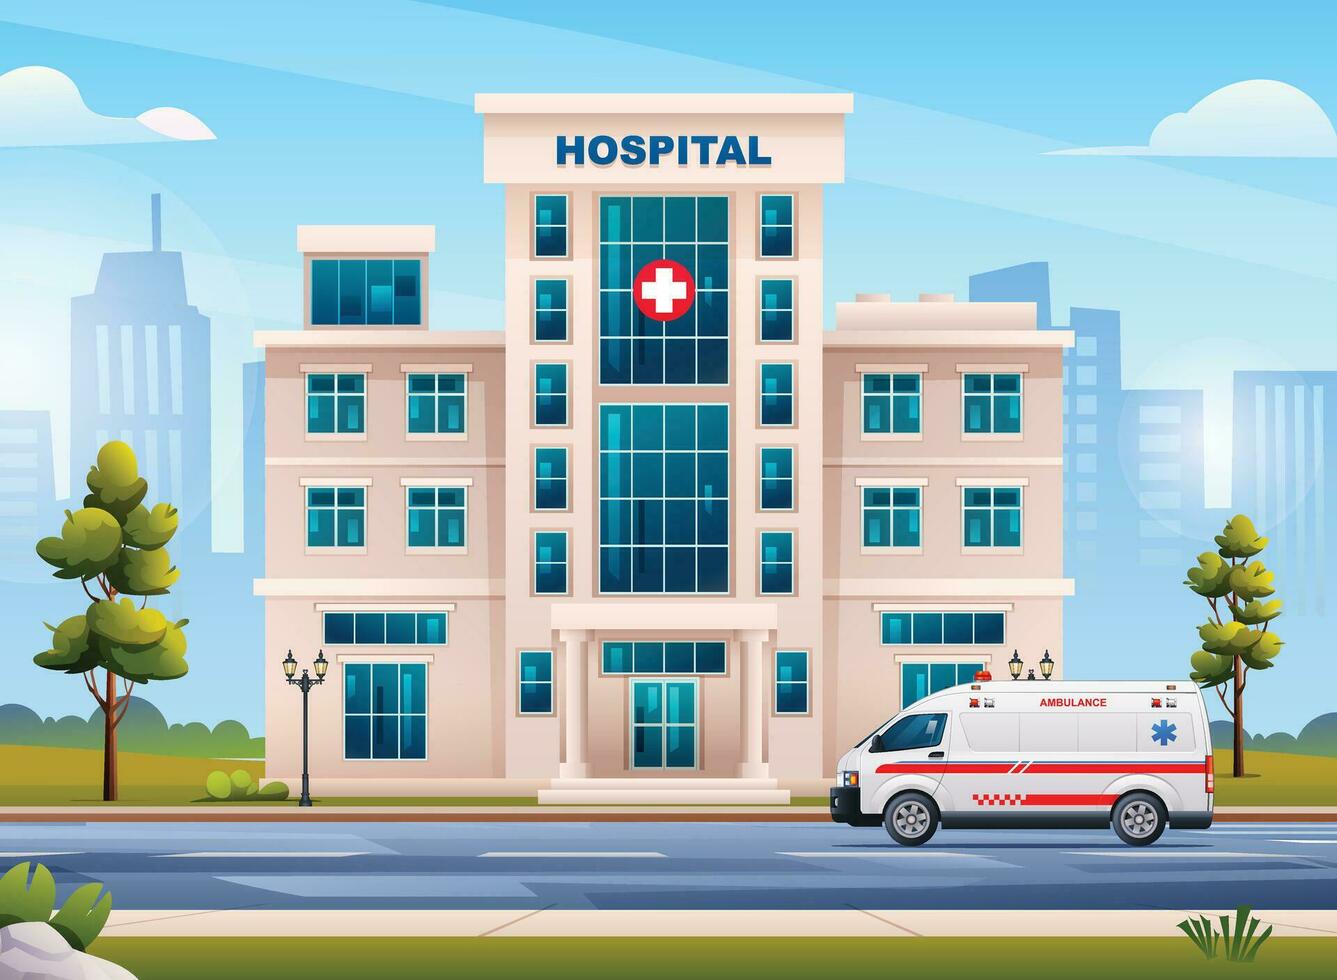 ospedale edificio con ambulanza emergenza auto e città paesaggio. vettore cartone animato illustrazione